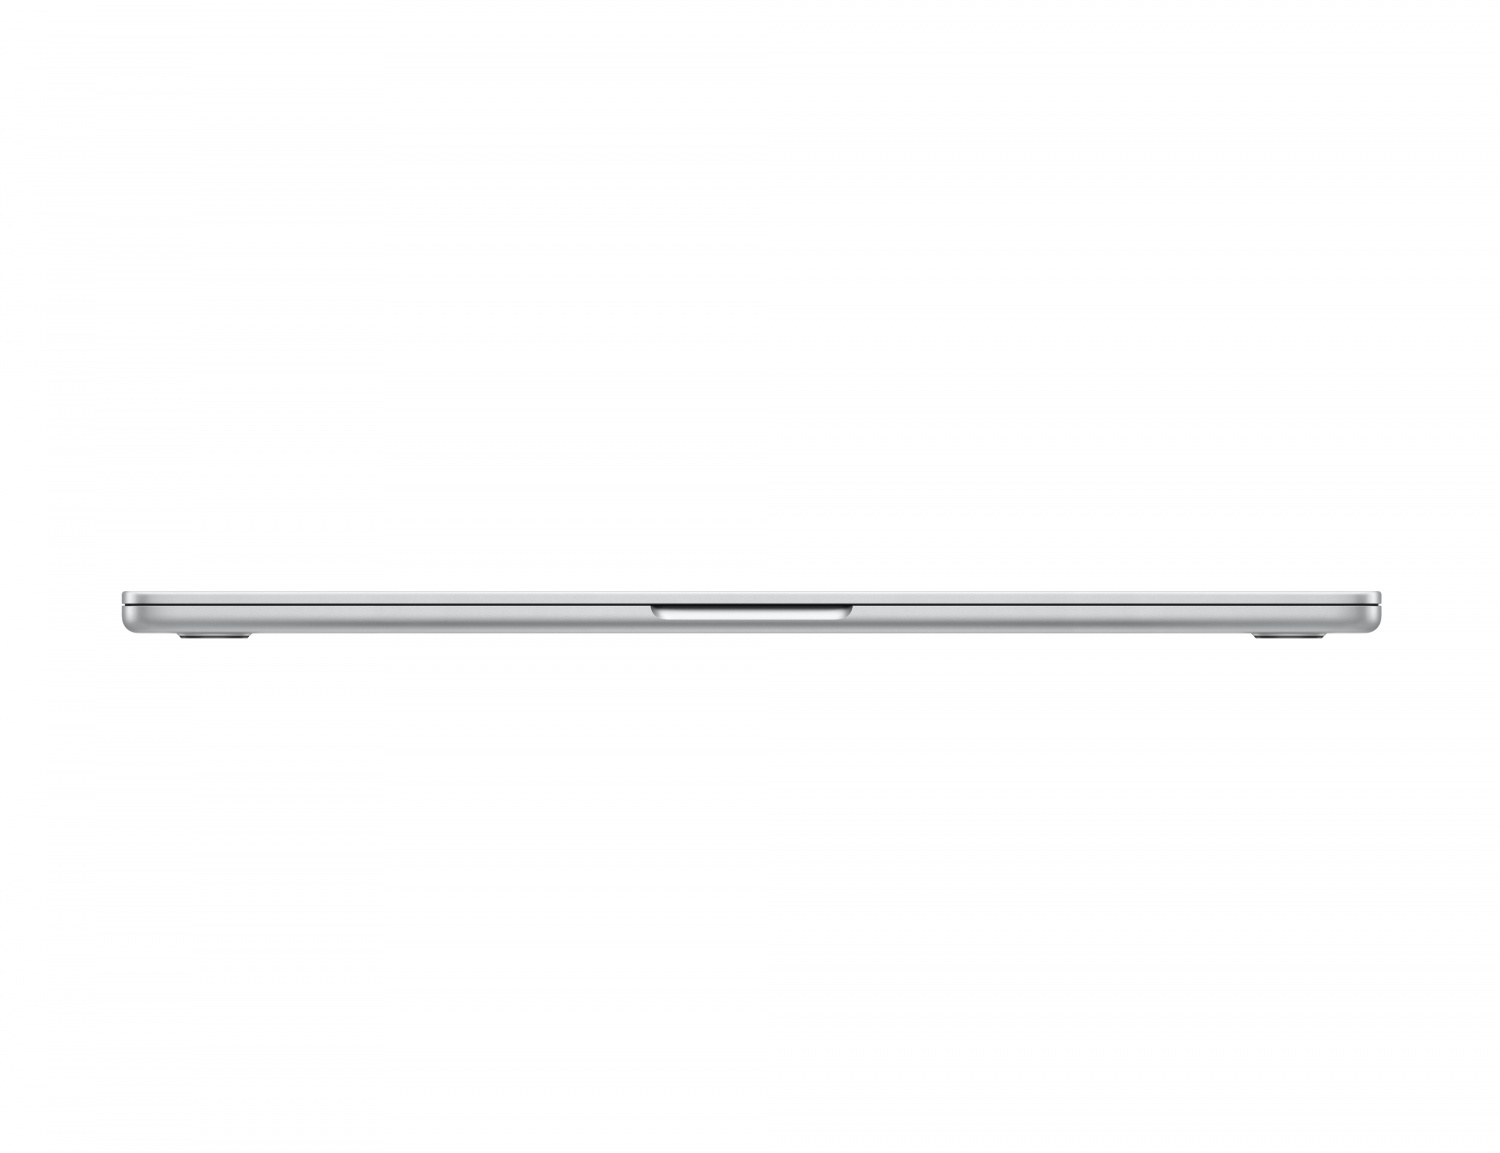 Купить ноутбук apple macbook air 15 m2 8/256gb silver (mqkr3) Apple MacBook Air в официальном магазине Apple, Samsung, Xiaomi. iPixel.ru Купить, заказ, кредит, рассрочка, отзывы,  характеристики, цена,  фотографии, в подарок.